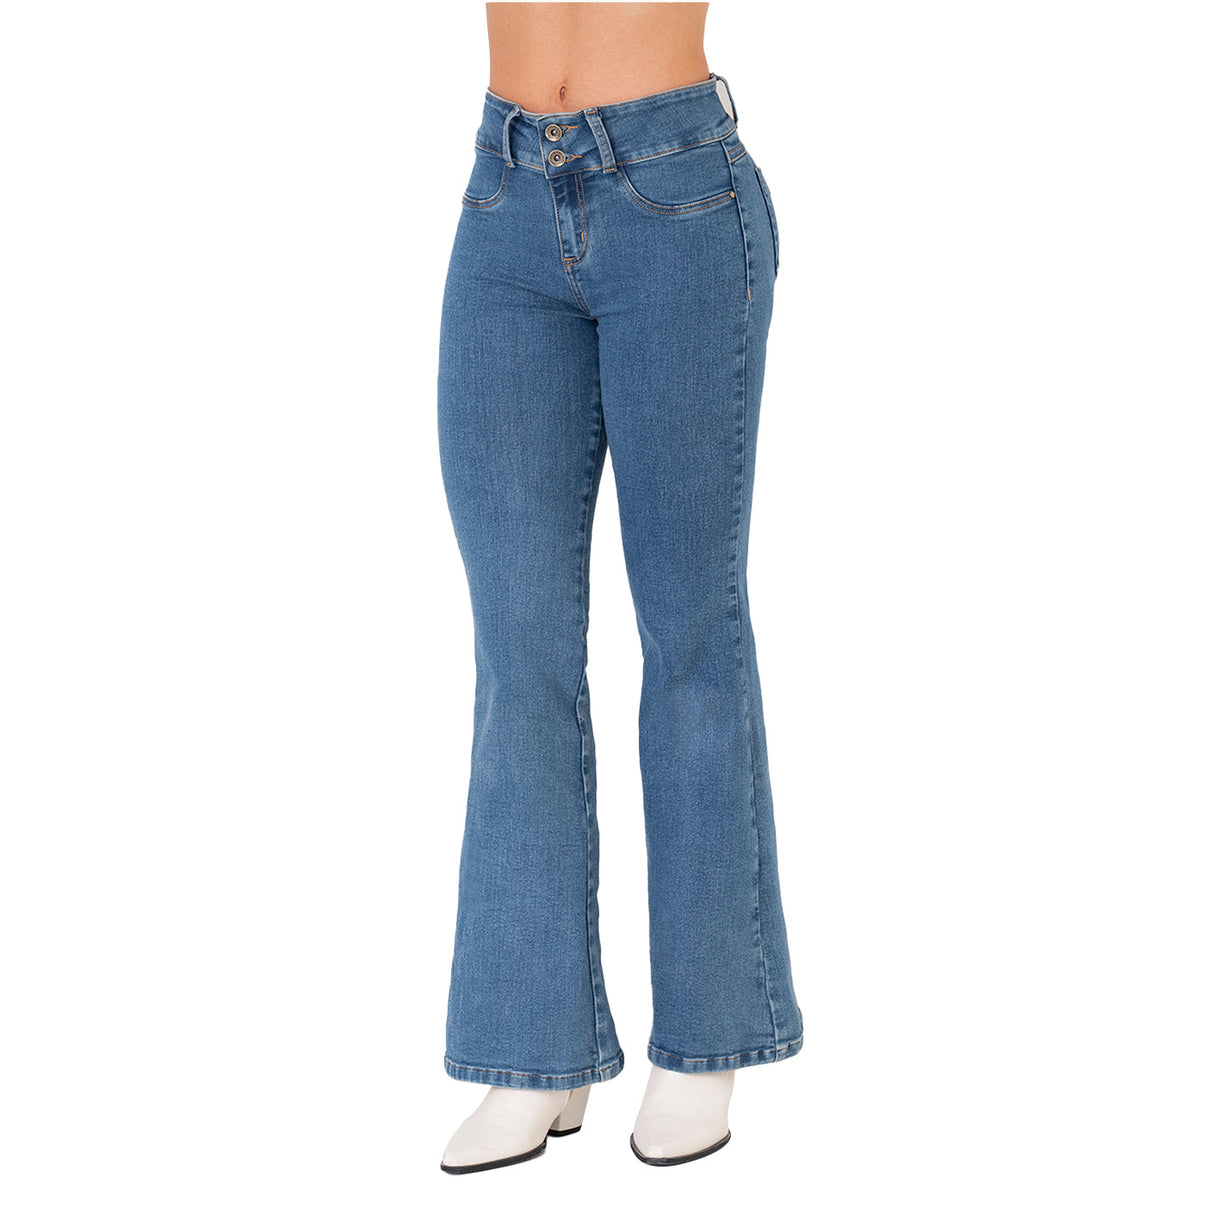 Pantalón Colombiano Levanta Pompa Modelo 2055 - Gauki Jeans